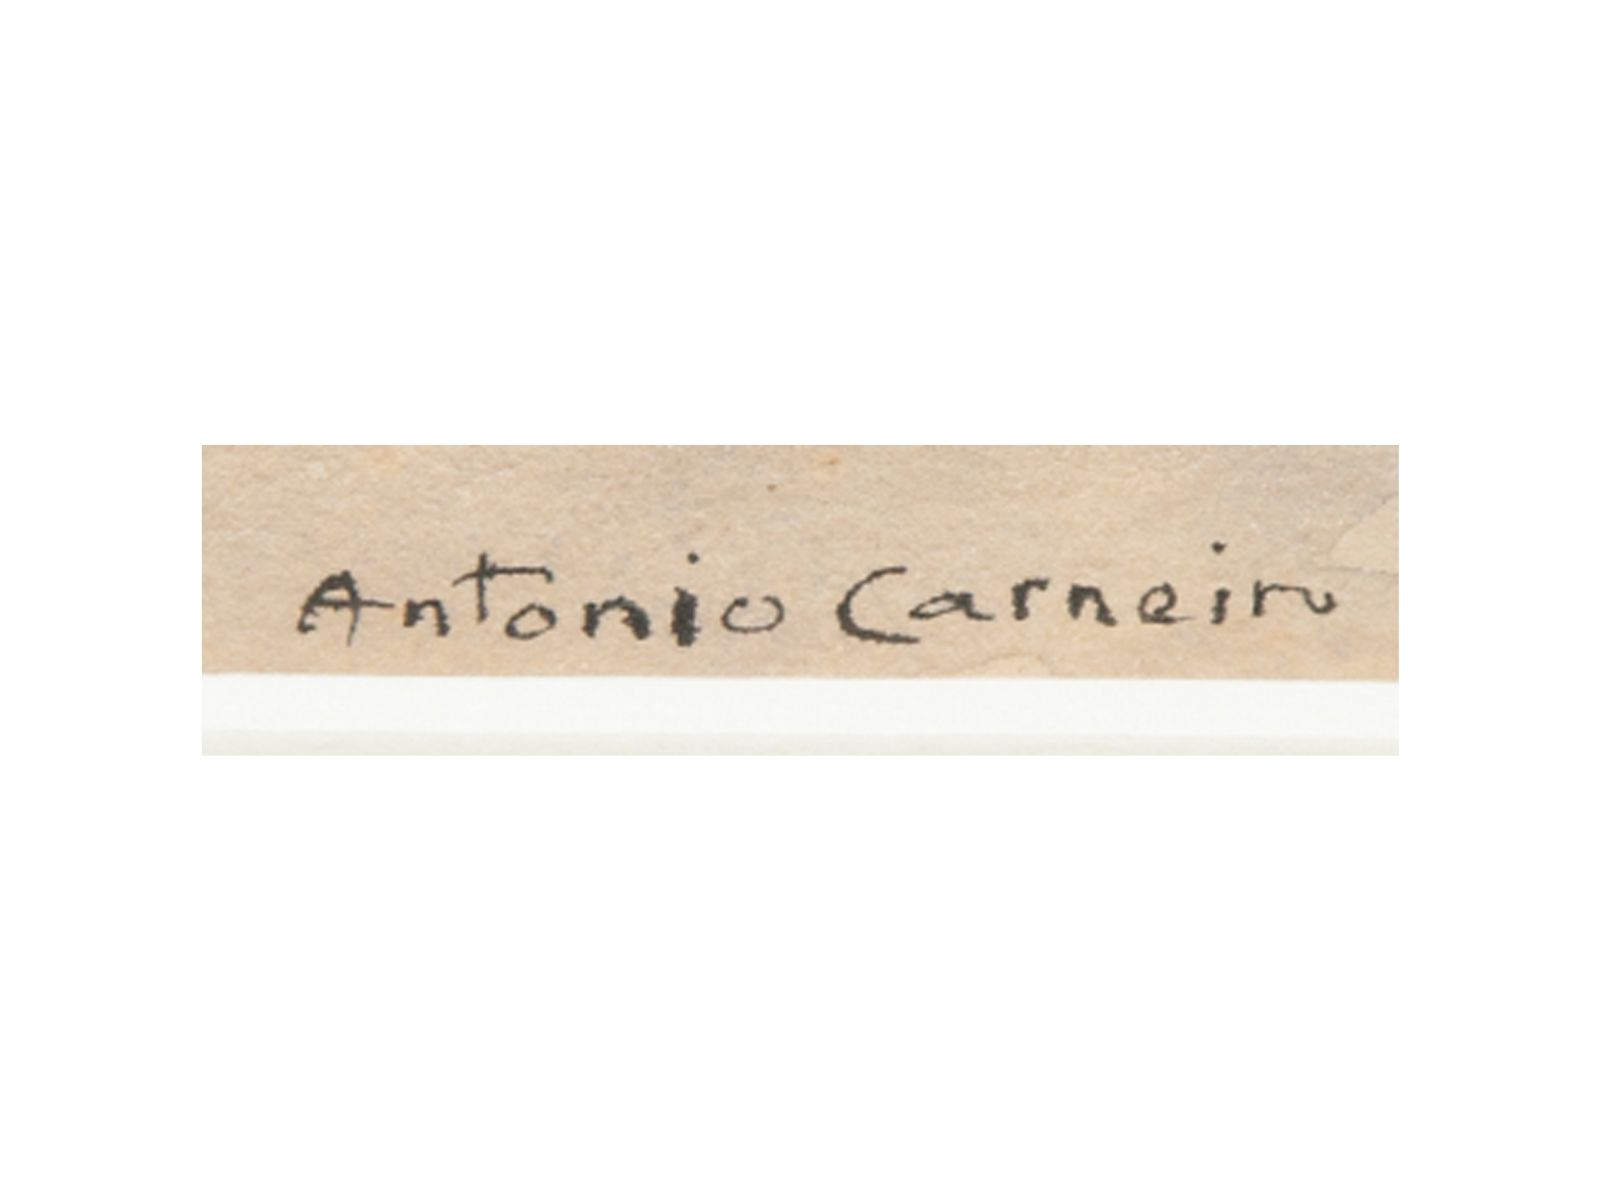 ANTÓNIO CARNEIRO (1872-1930)